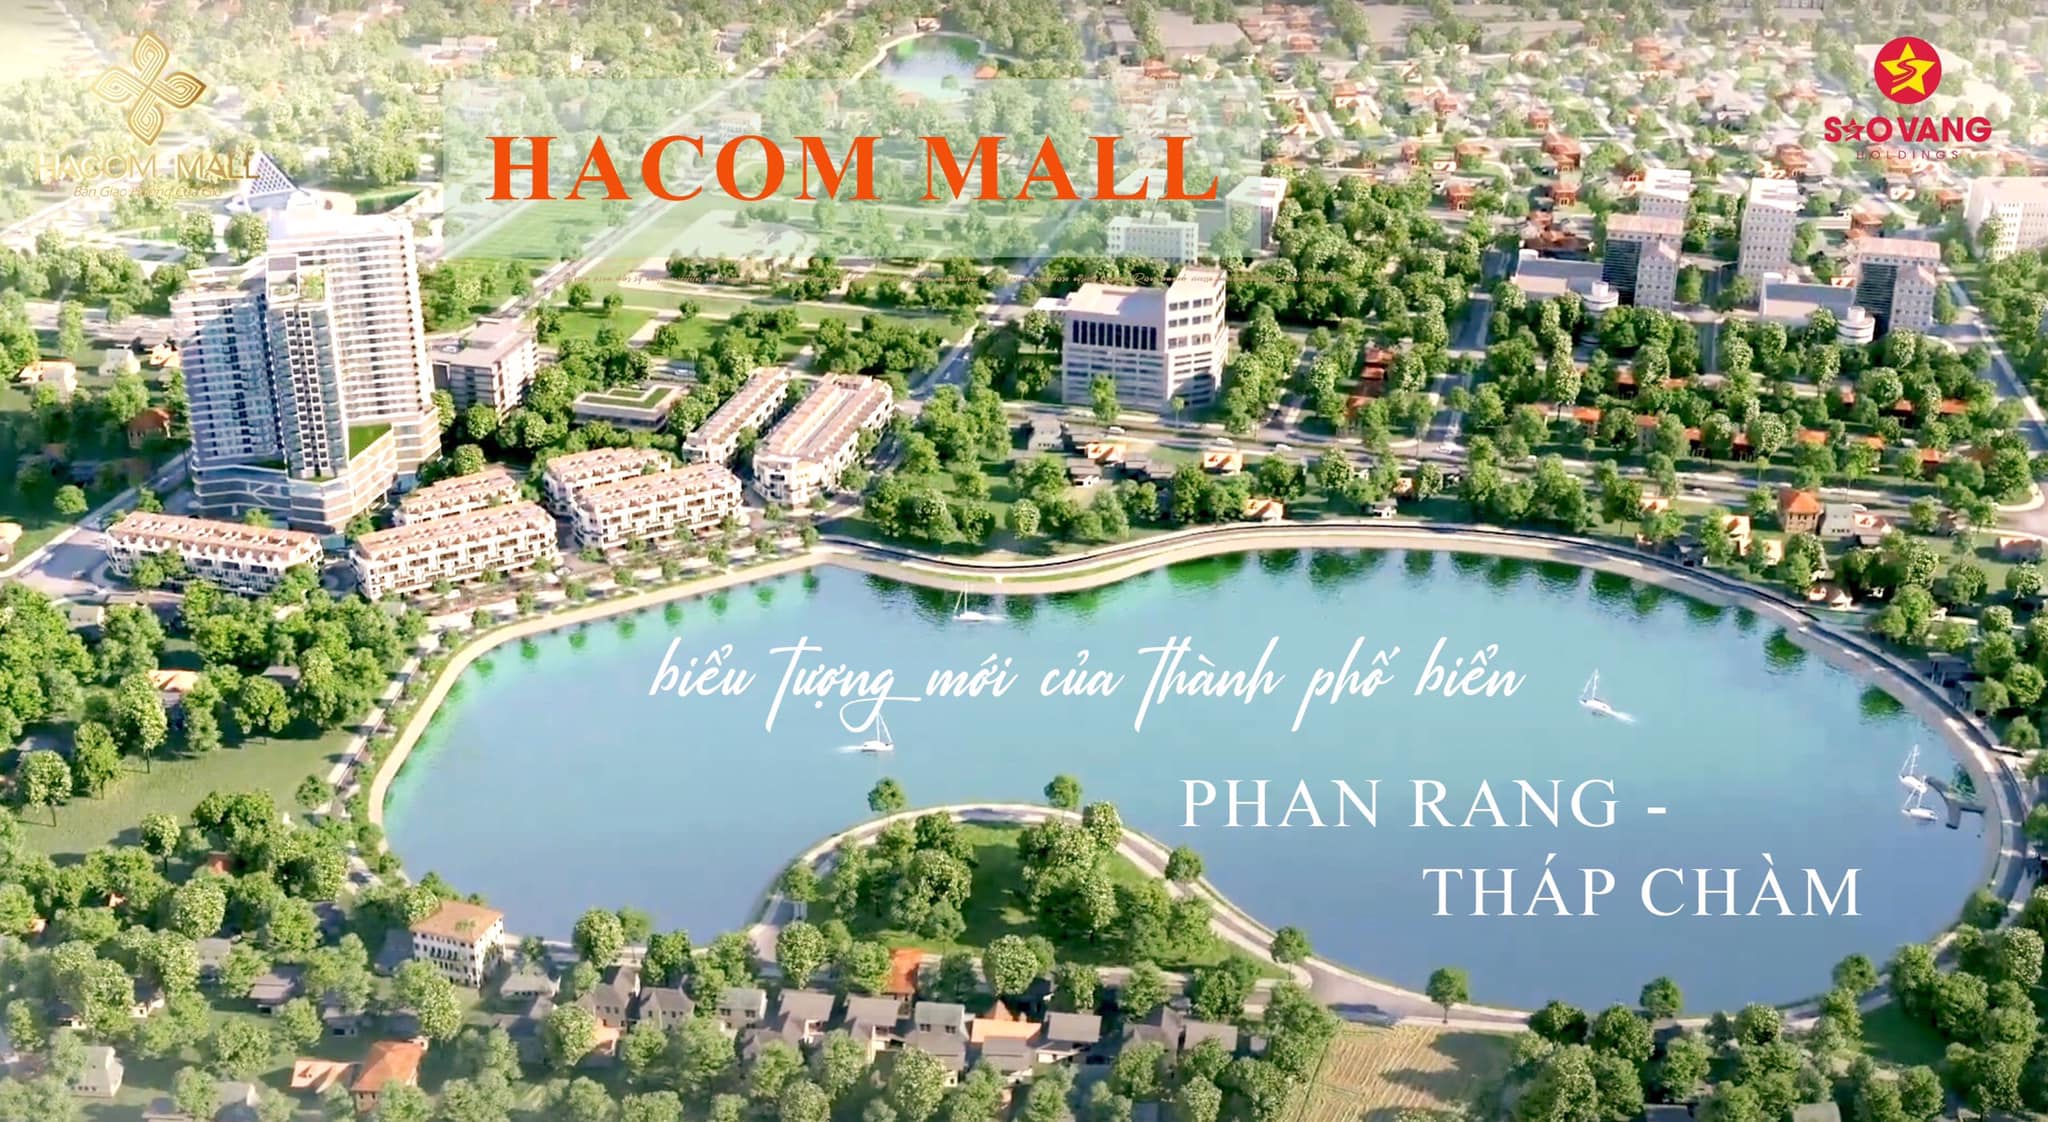 Phối cảnh dự án Hacom Mall Ninh Thuận - Biểu tượng mới của Phan Rang - Tháp Chàm